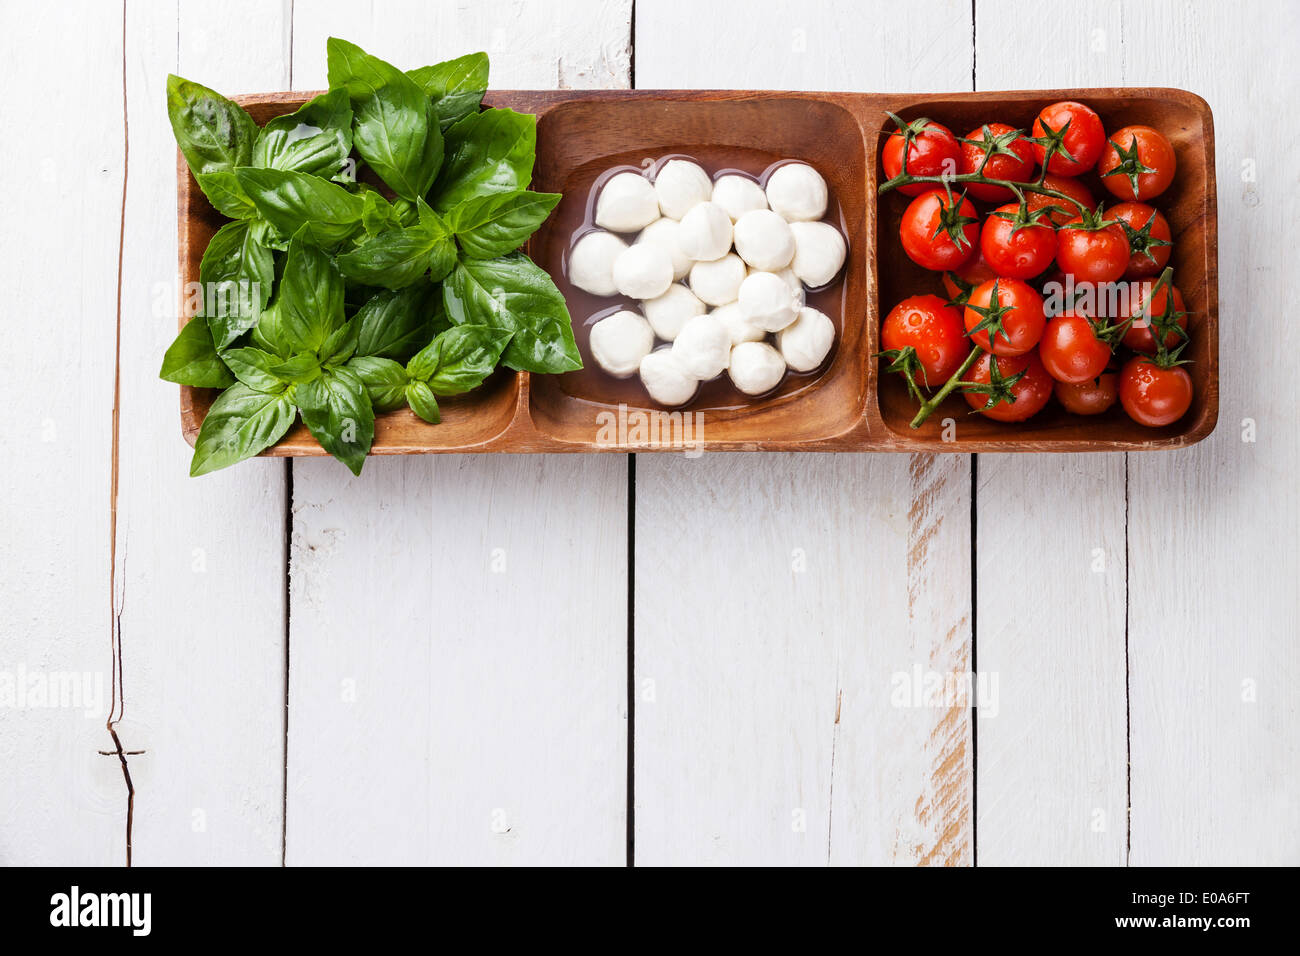 Albahaca verde, blanco de mozzarella, tomate rojo - los colores de la bandera italiana Foto de stock